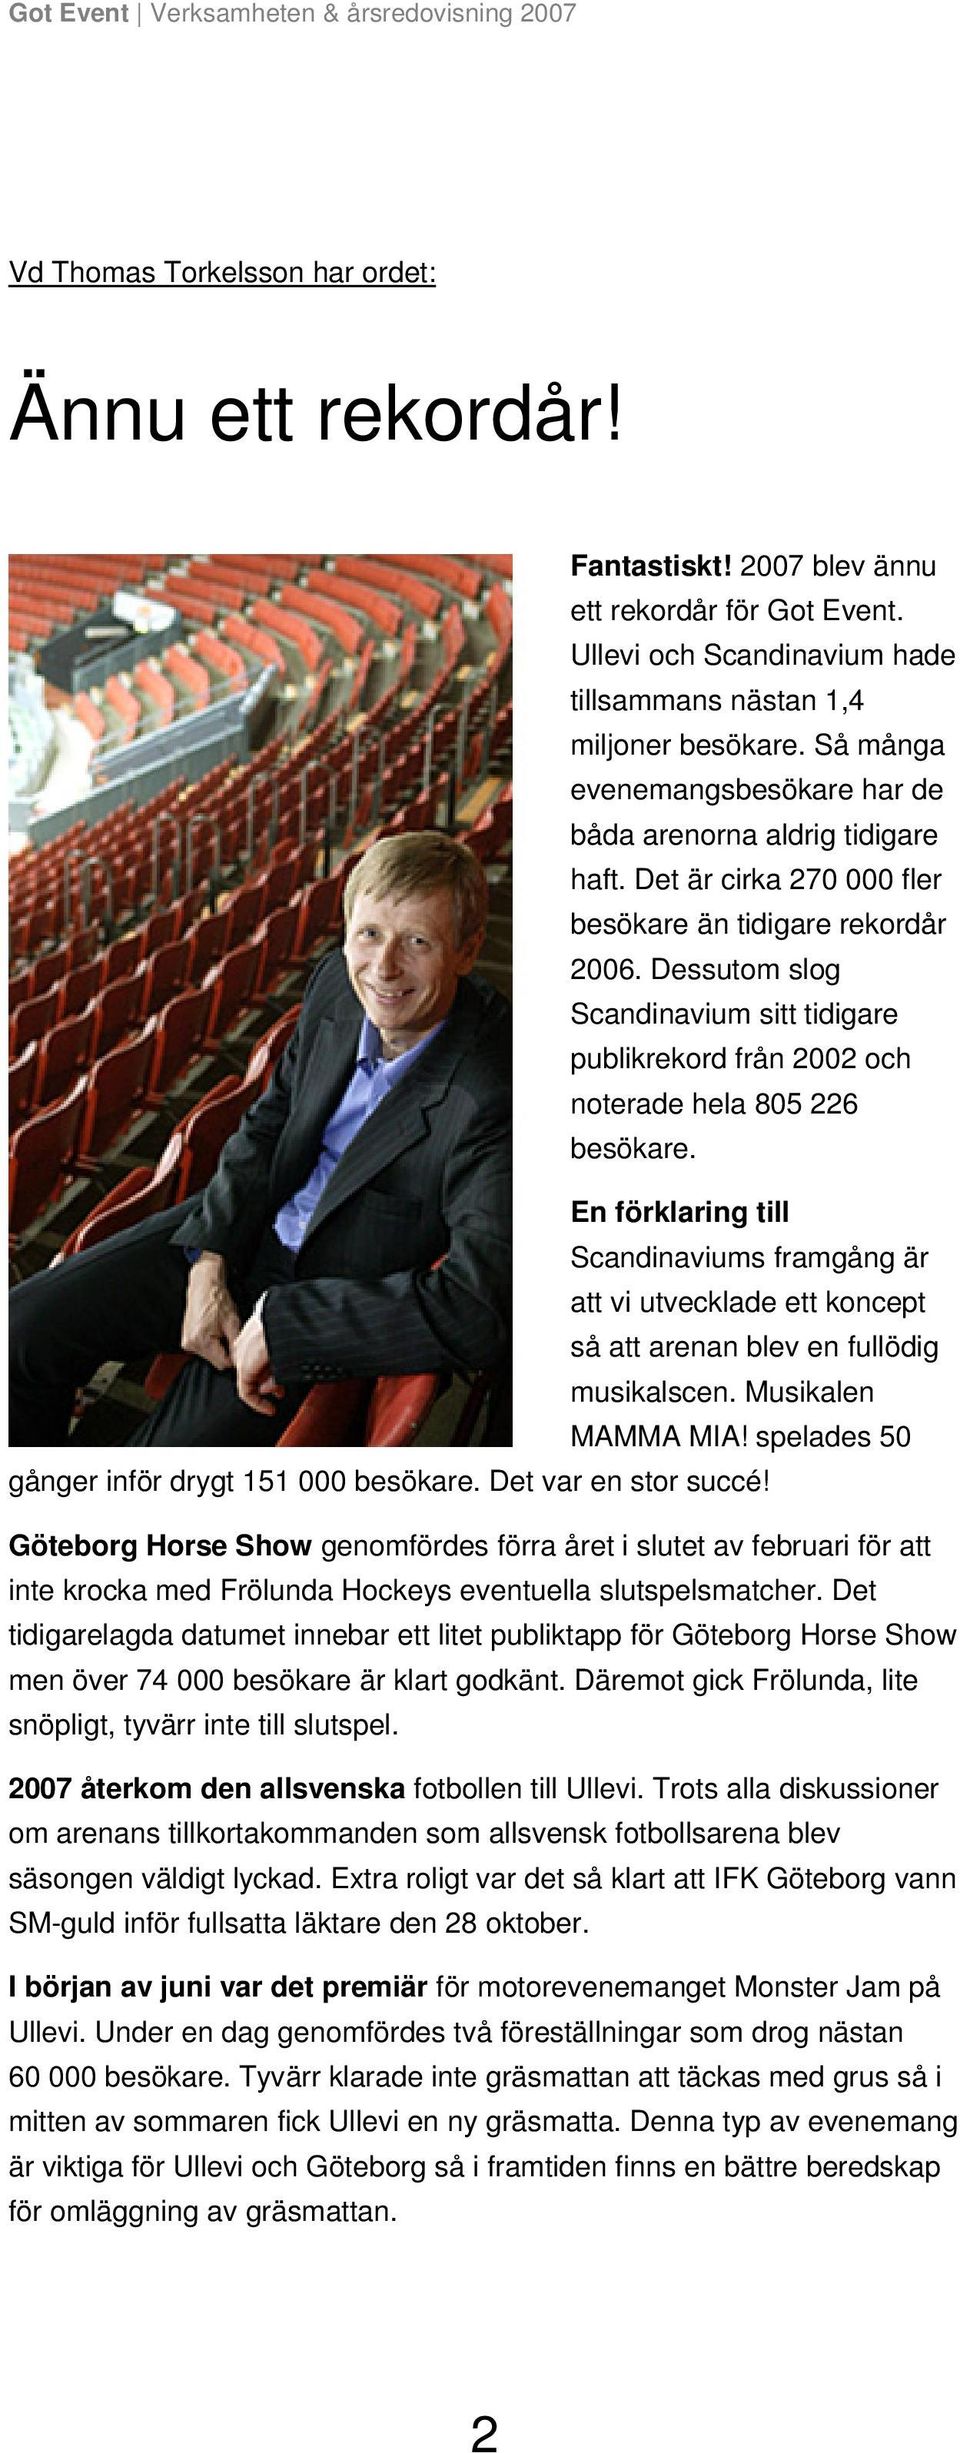 Dessutom slog Scandinavium sitt tidigare publikrekord från 2002 och noterade hela 805 226 besökare.